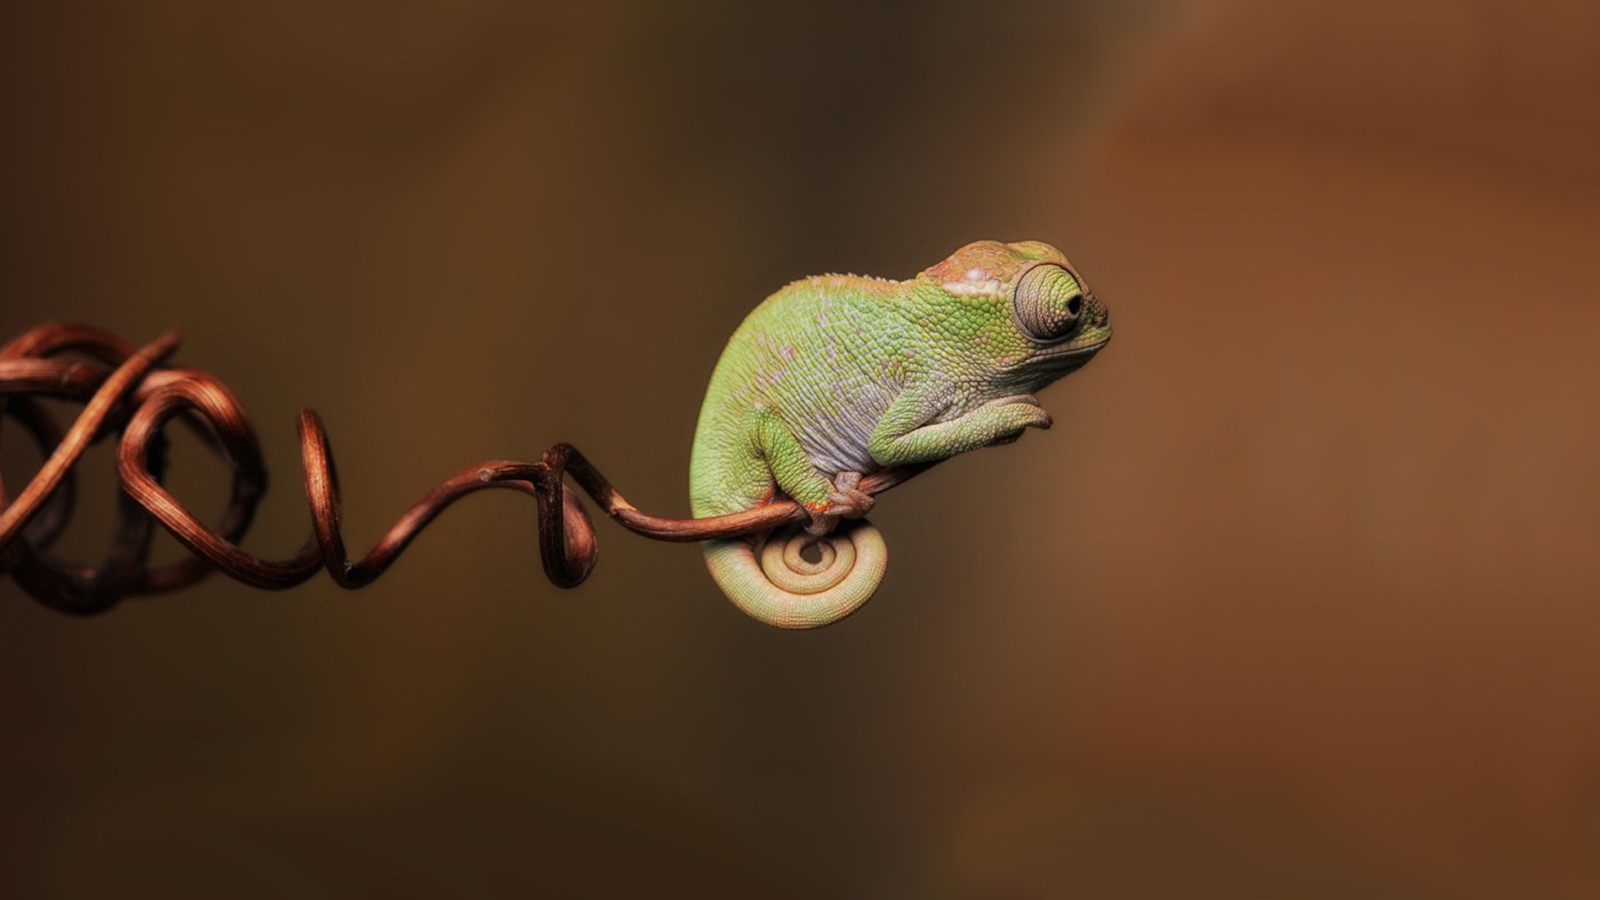 Chameleon On Stick wallpaper 1600x900